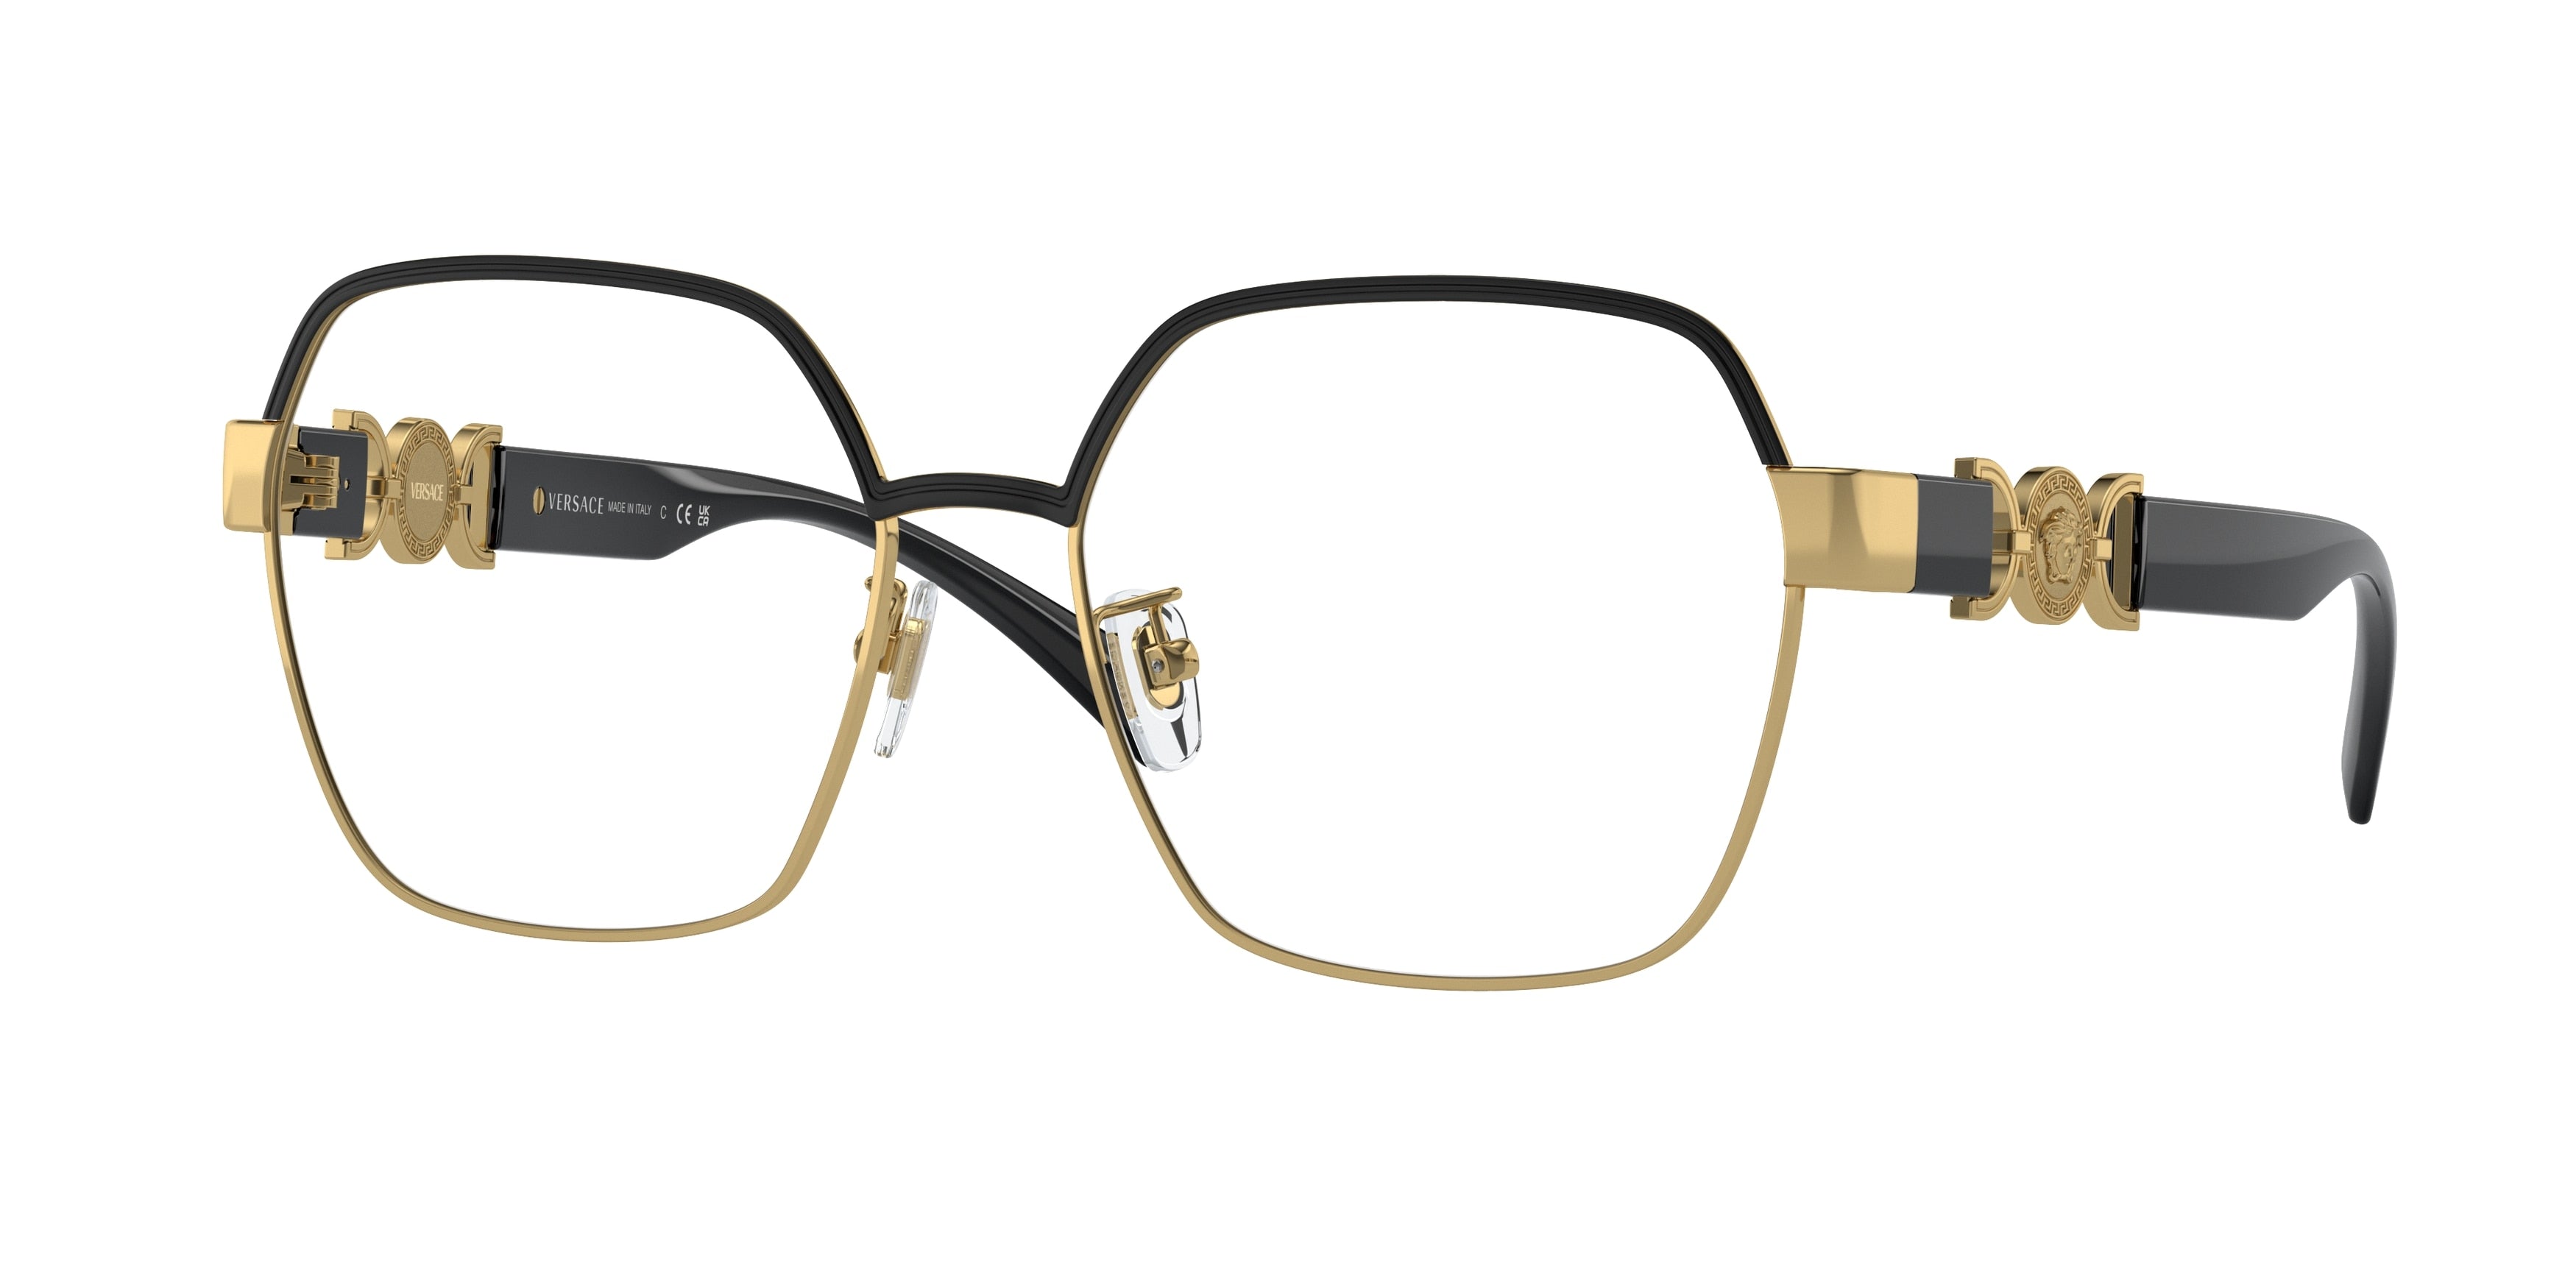 Versace VE1291D Square Eyeglasses  1436-Gold/Black 56-140-16 - Color Map Black